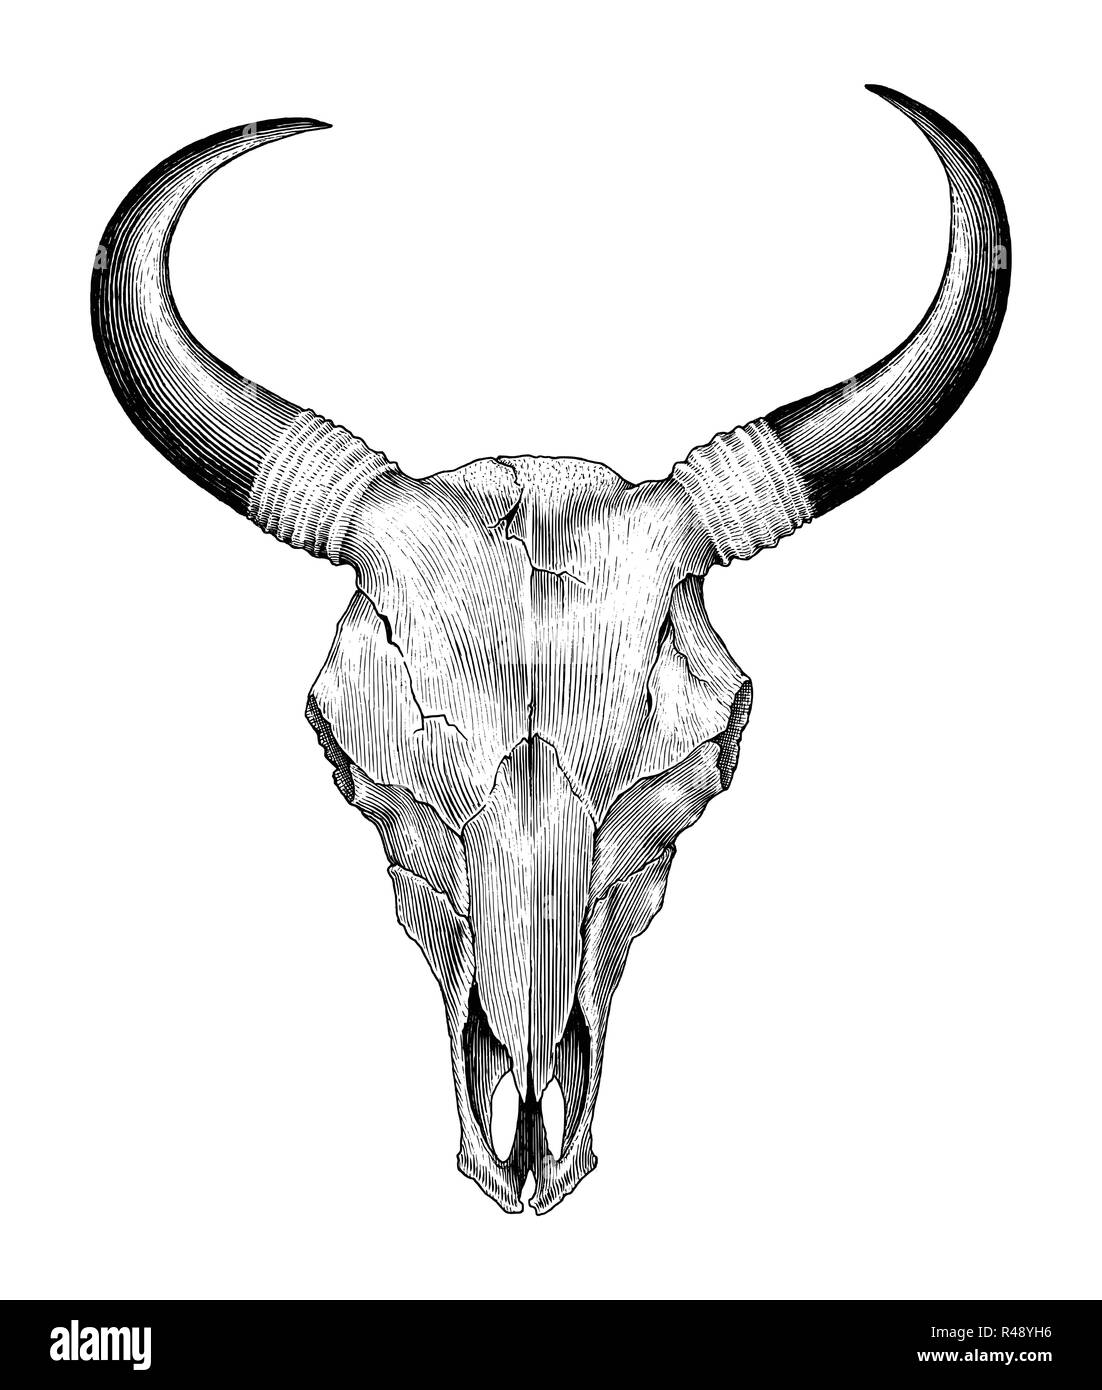 Cranio di mucca disegno a mano vintage illustrazione di incisione Illustrazione Vettoriale